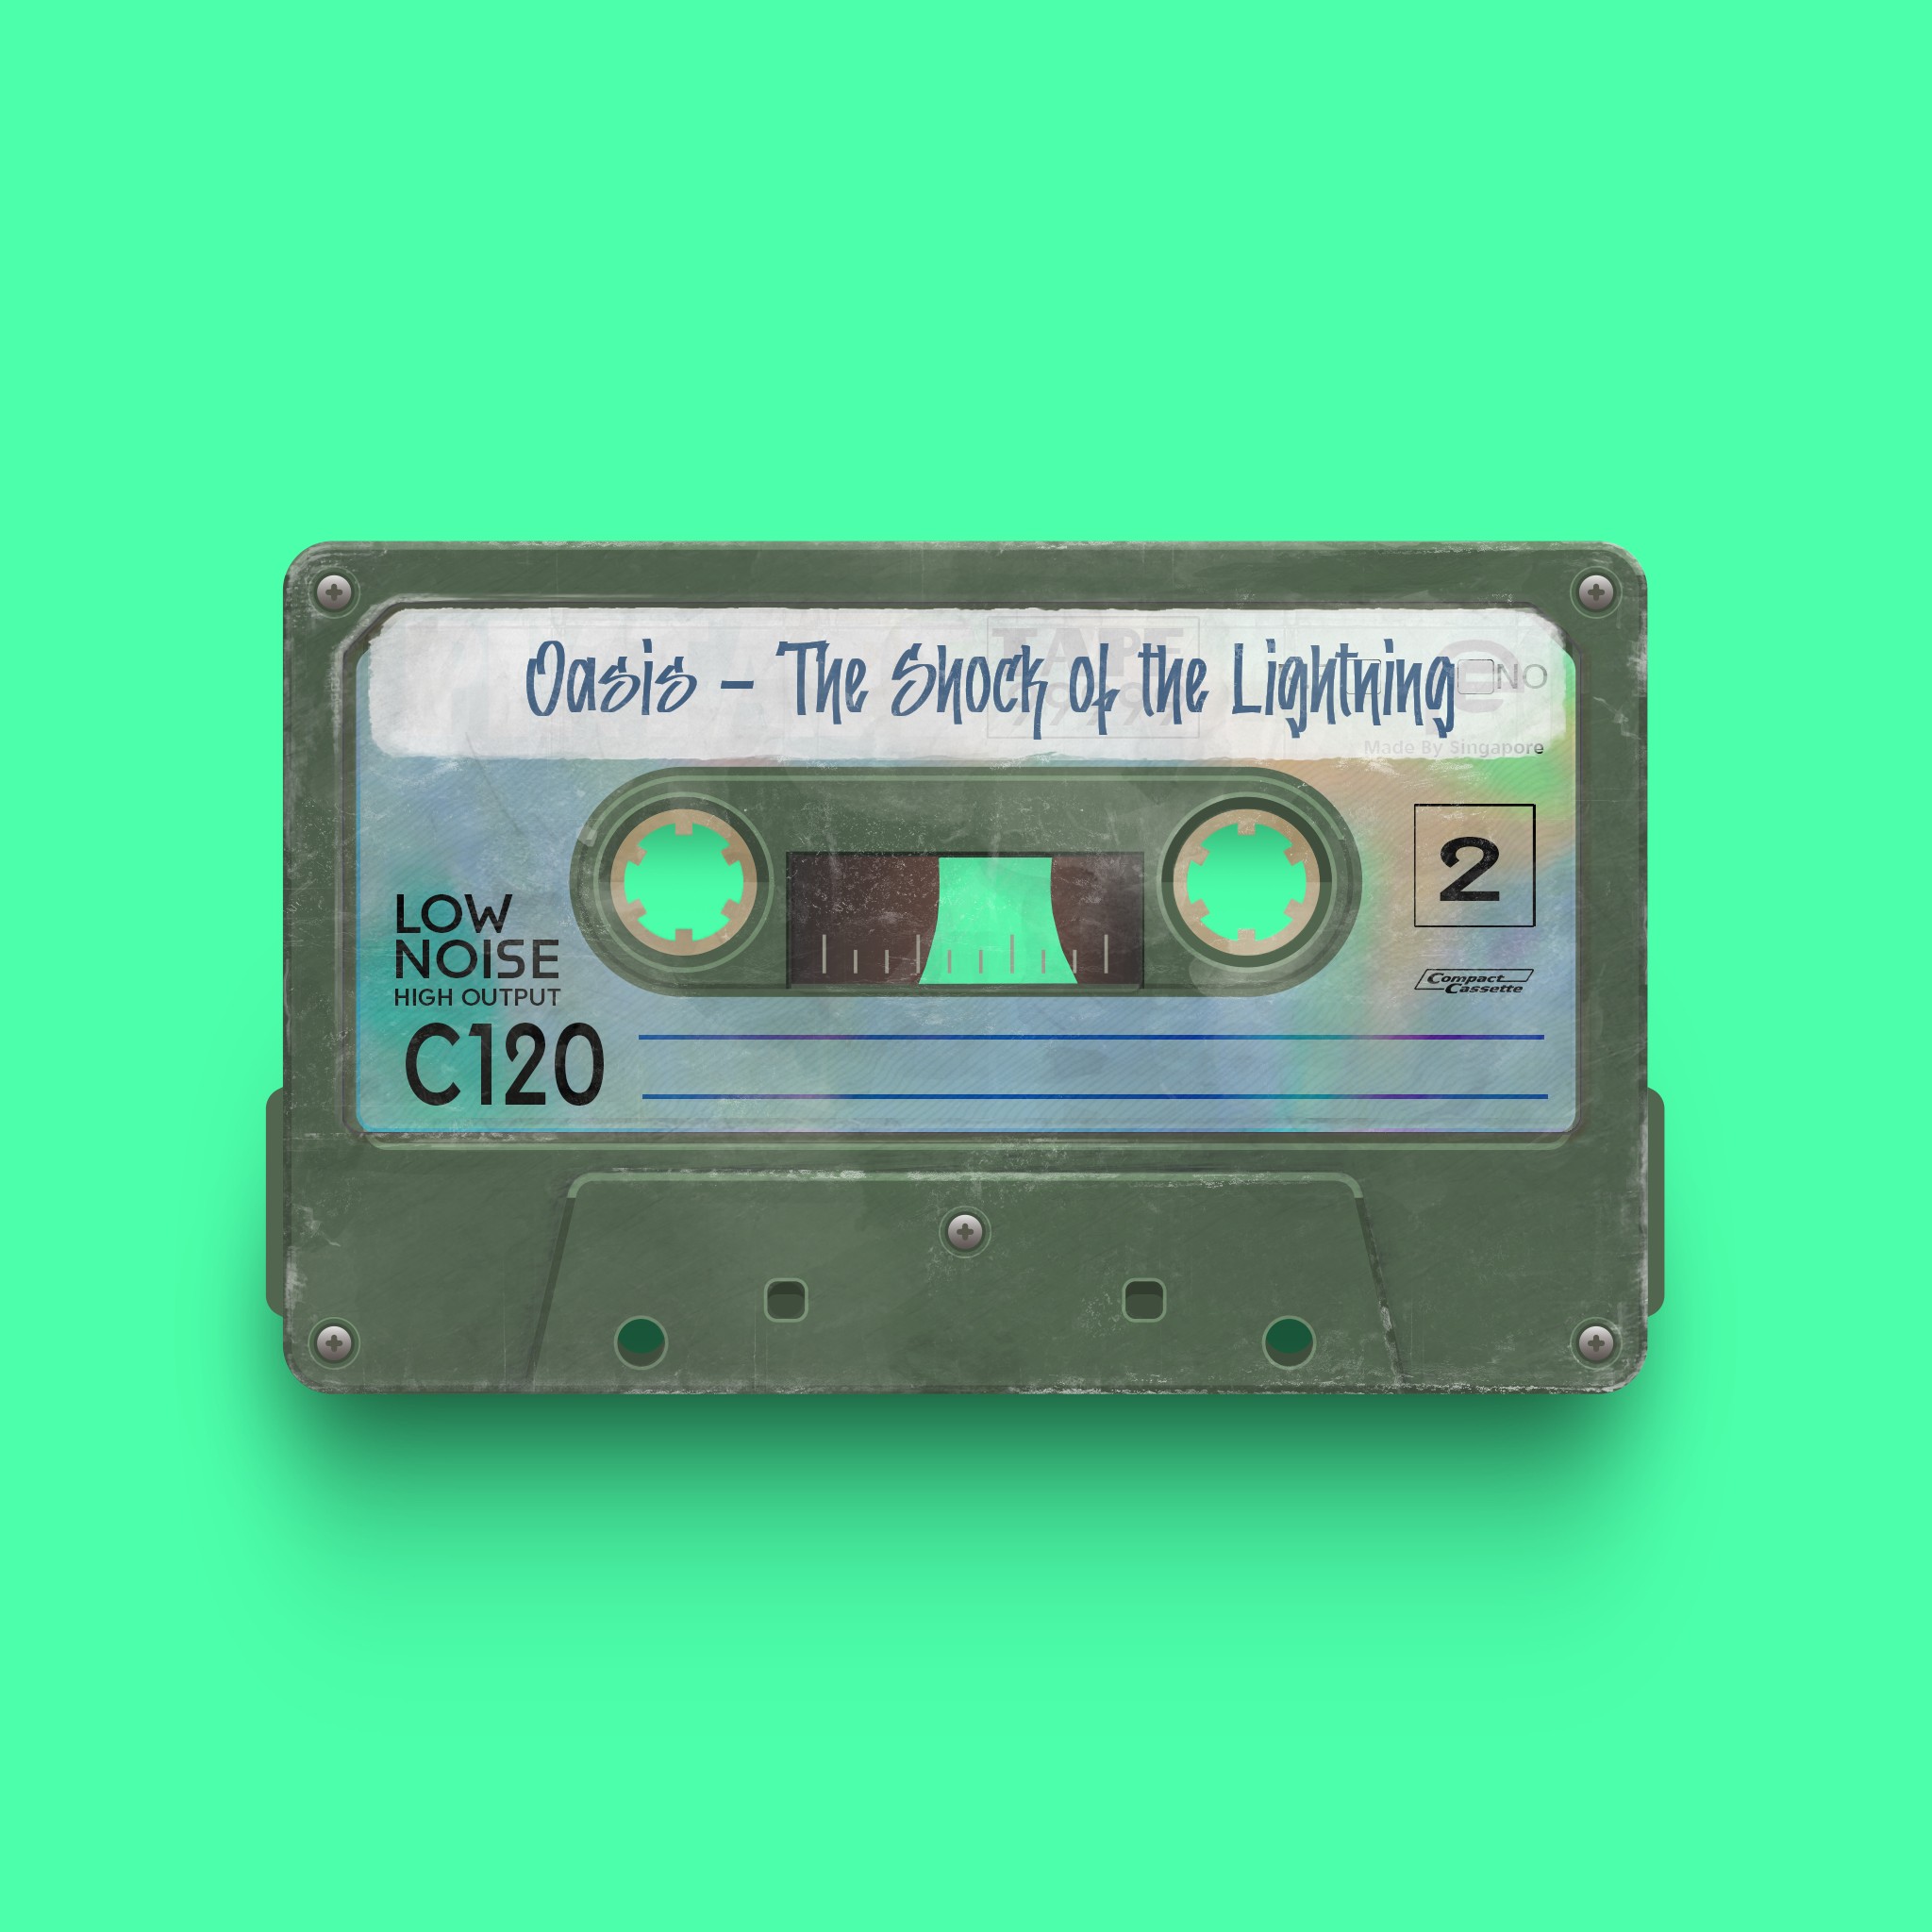 PixTape #9989 | Oasis - The Shock of the Lightning